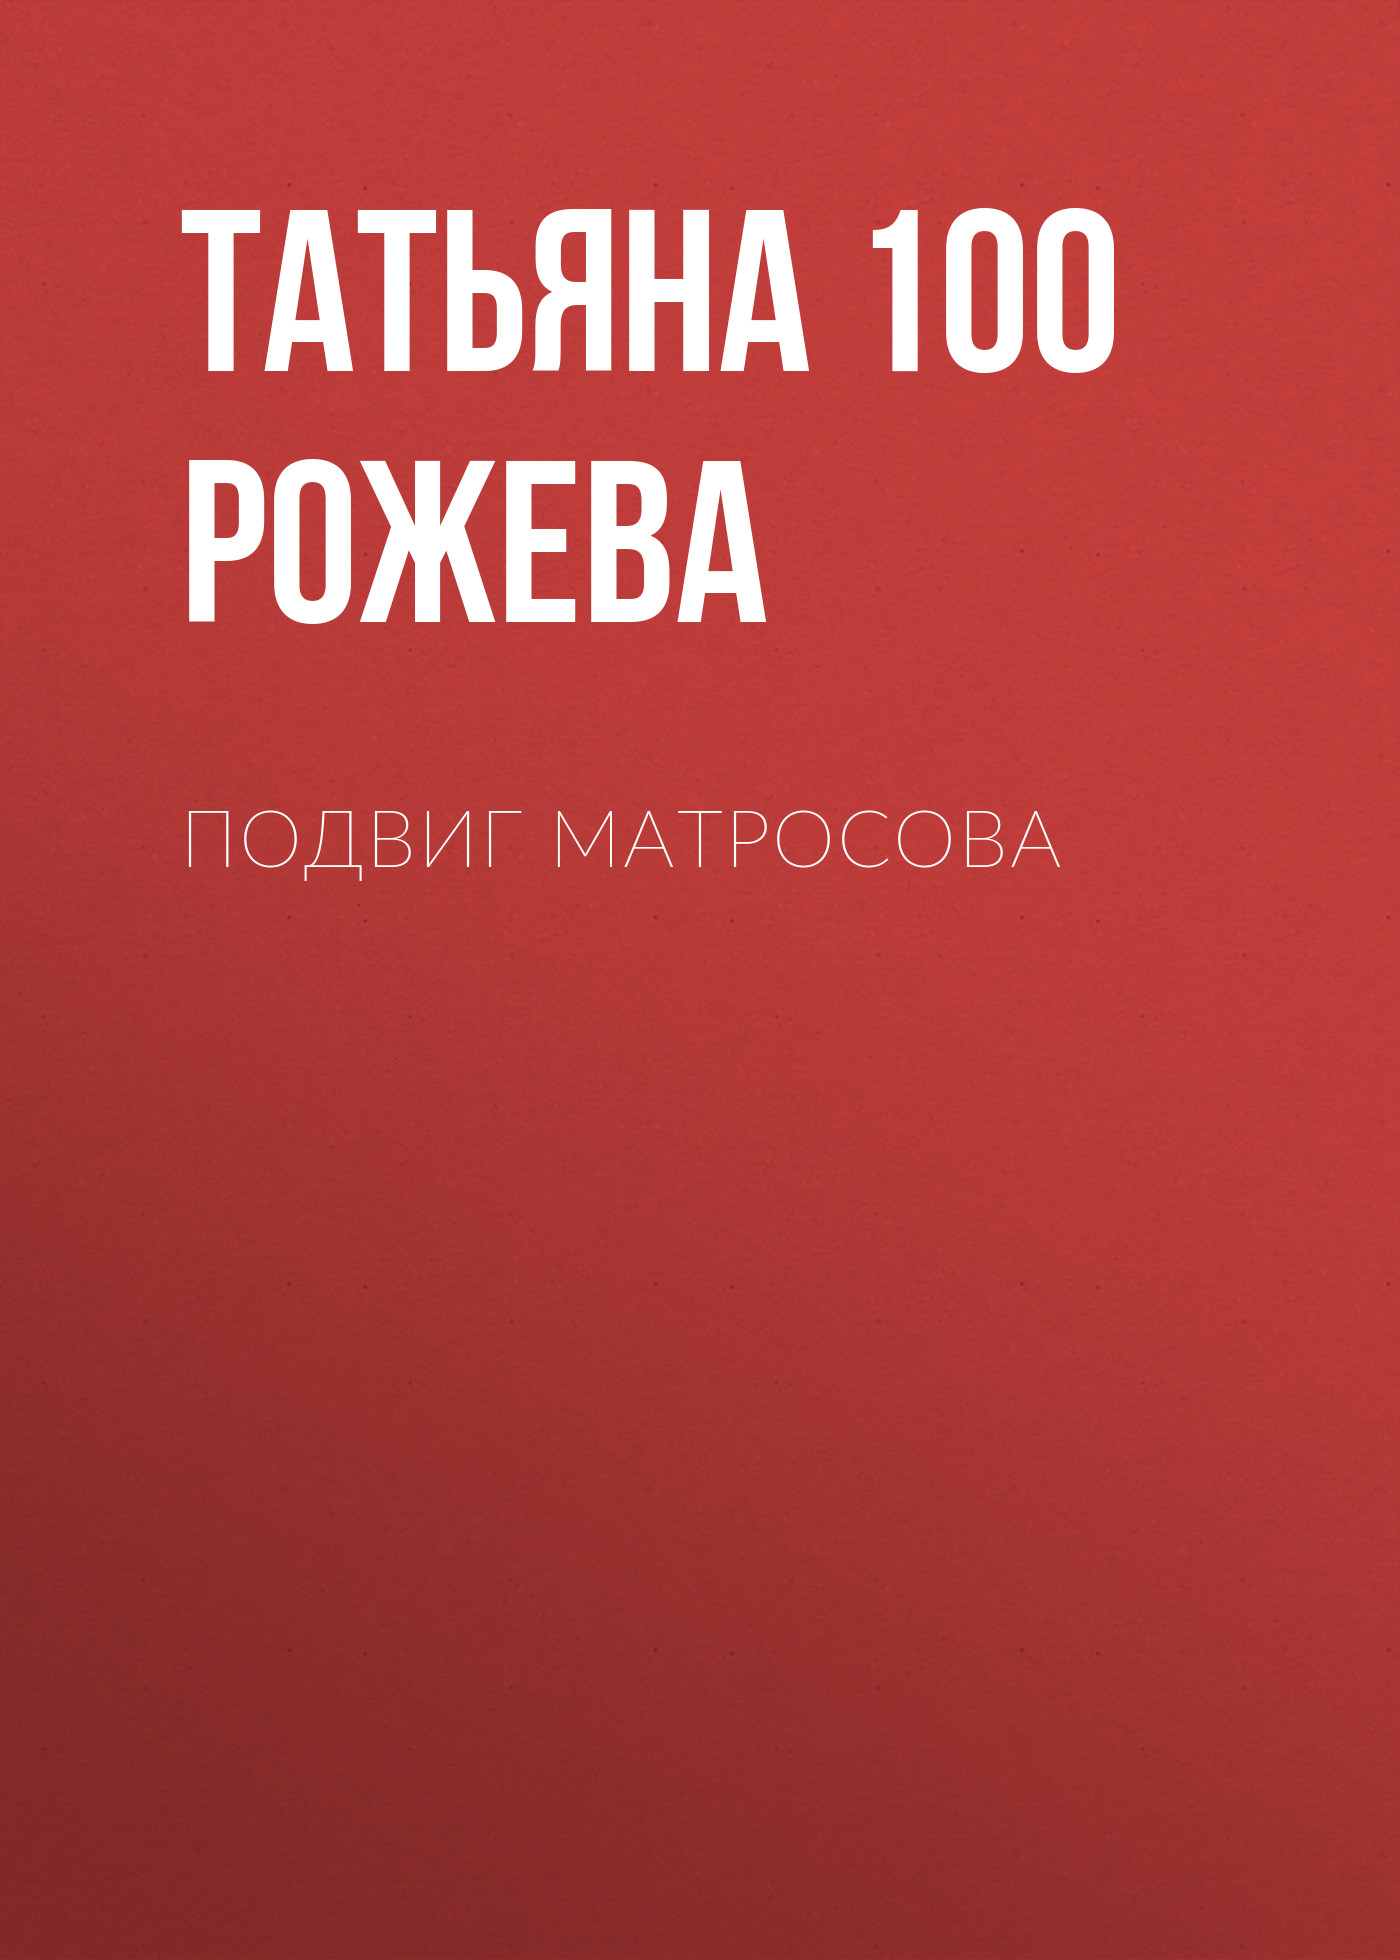 Скачать Подвиг Матросова - Татьяна 100 Рожева